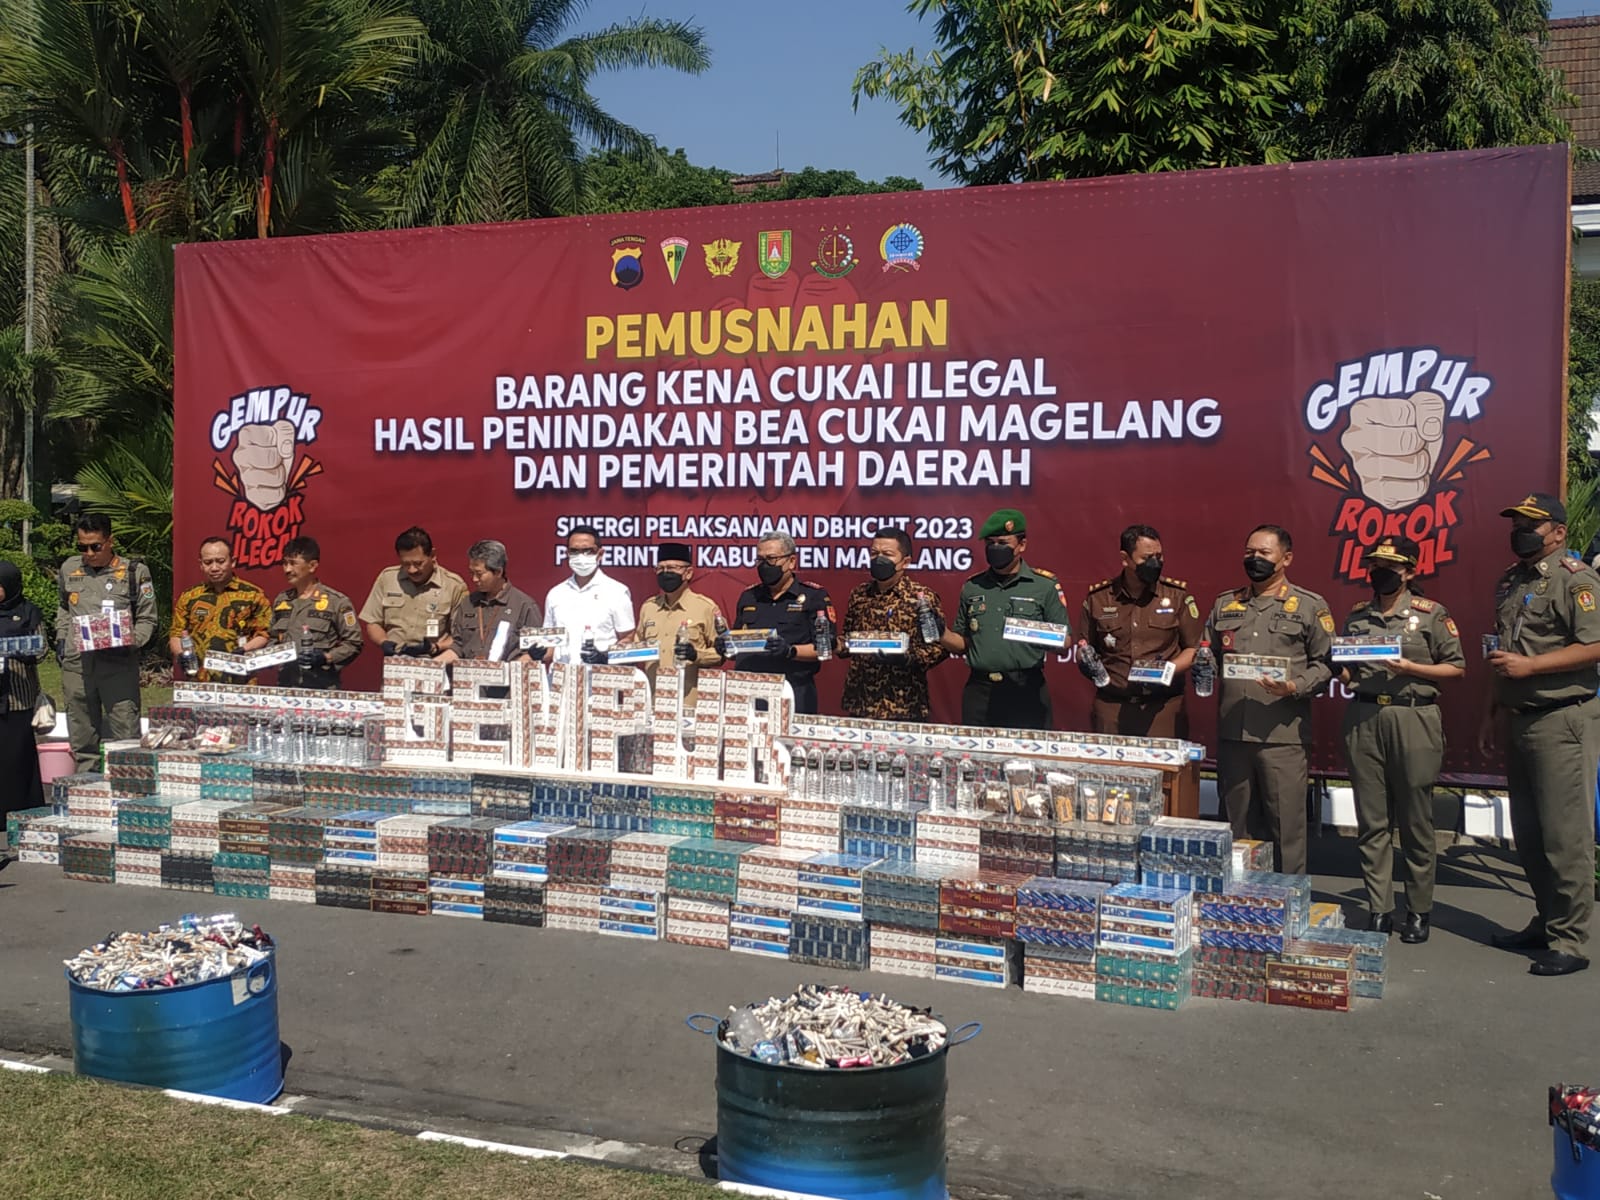 Komitmen KPKNL Semarang Dukung Pemberantasan Peredaran Barang Kena Cukai Ilegal